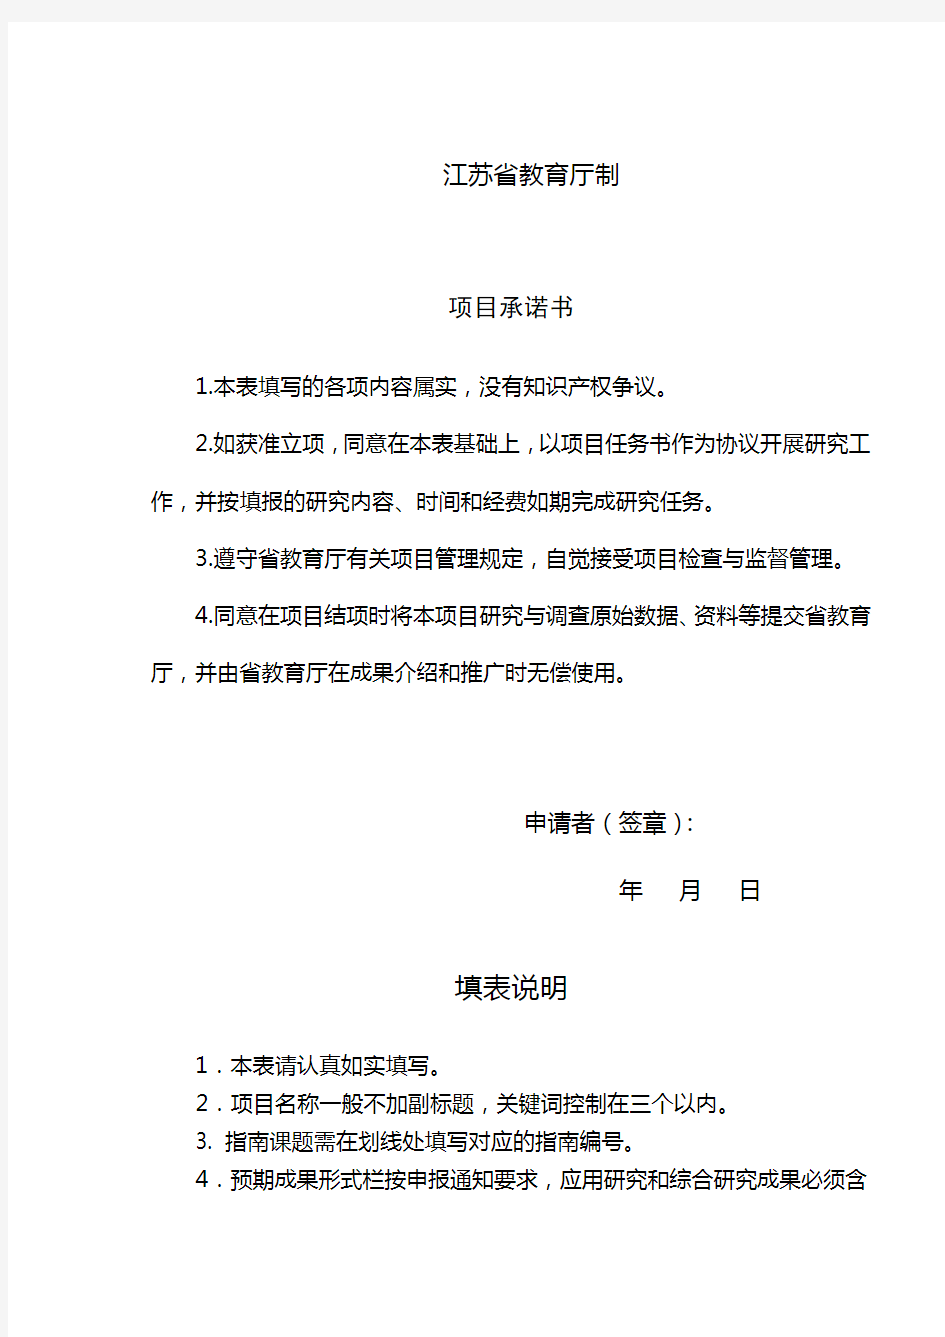 江苏省高校哲学社会科学重点专题研究项目申报书【模板】